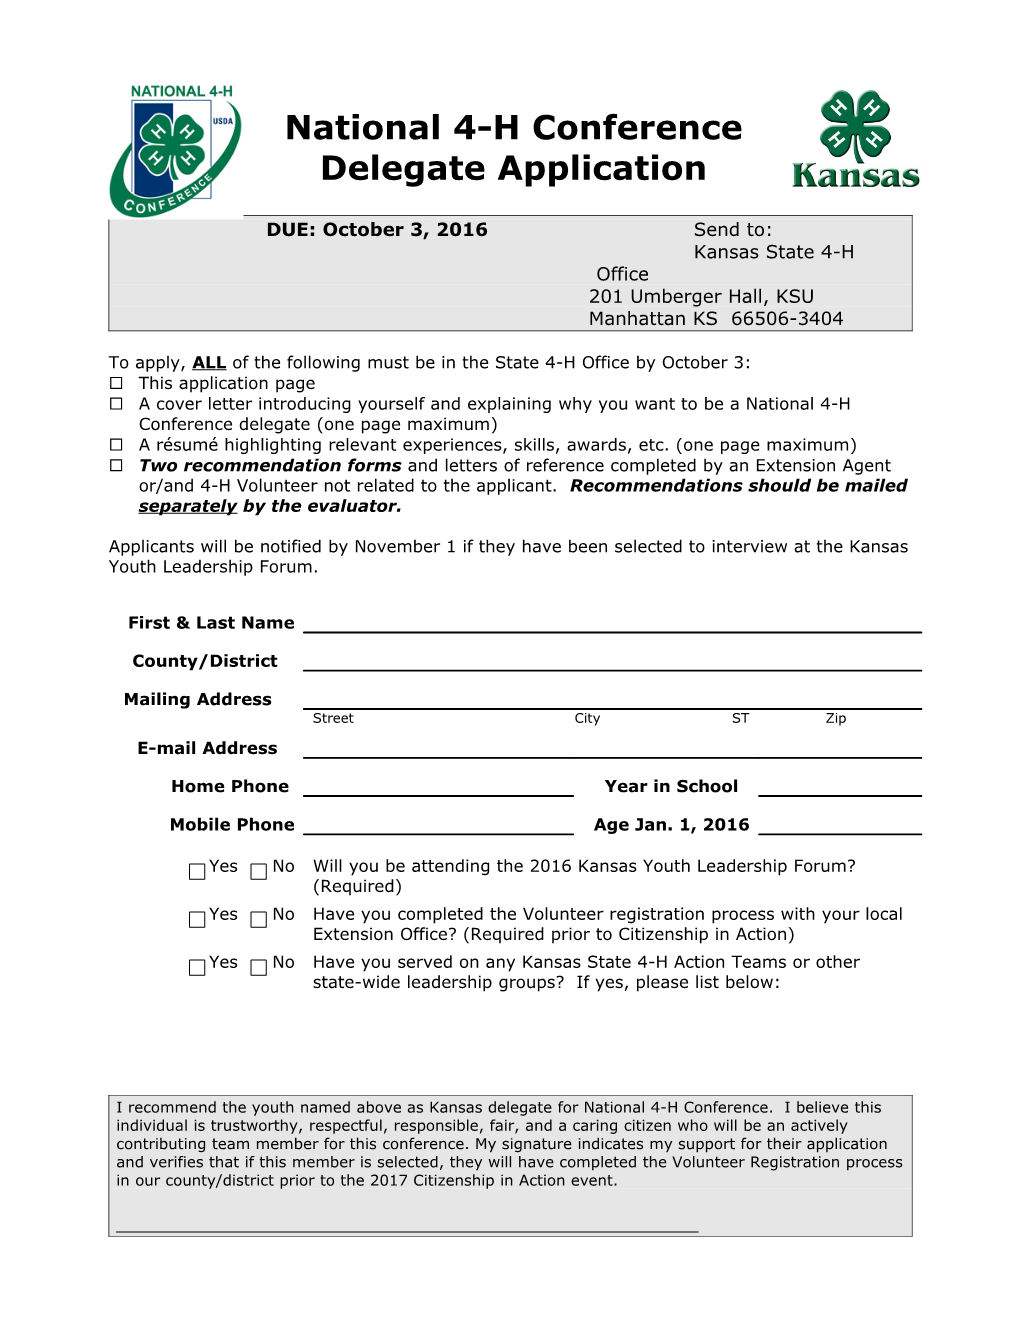 National 4-H Conference Delegate Application